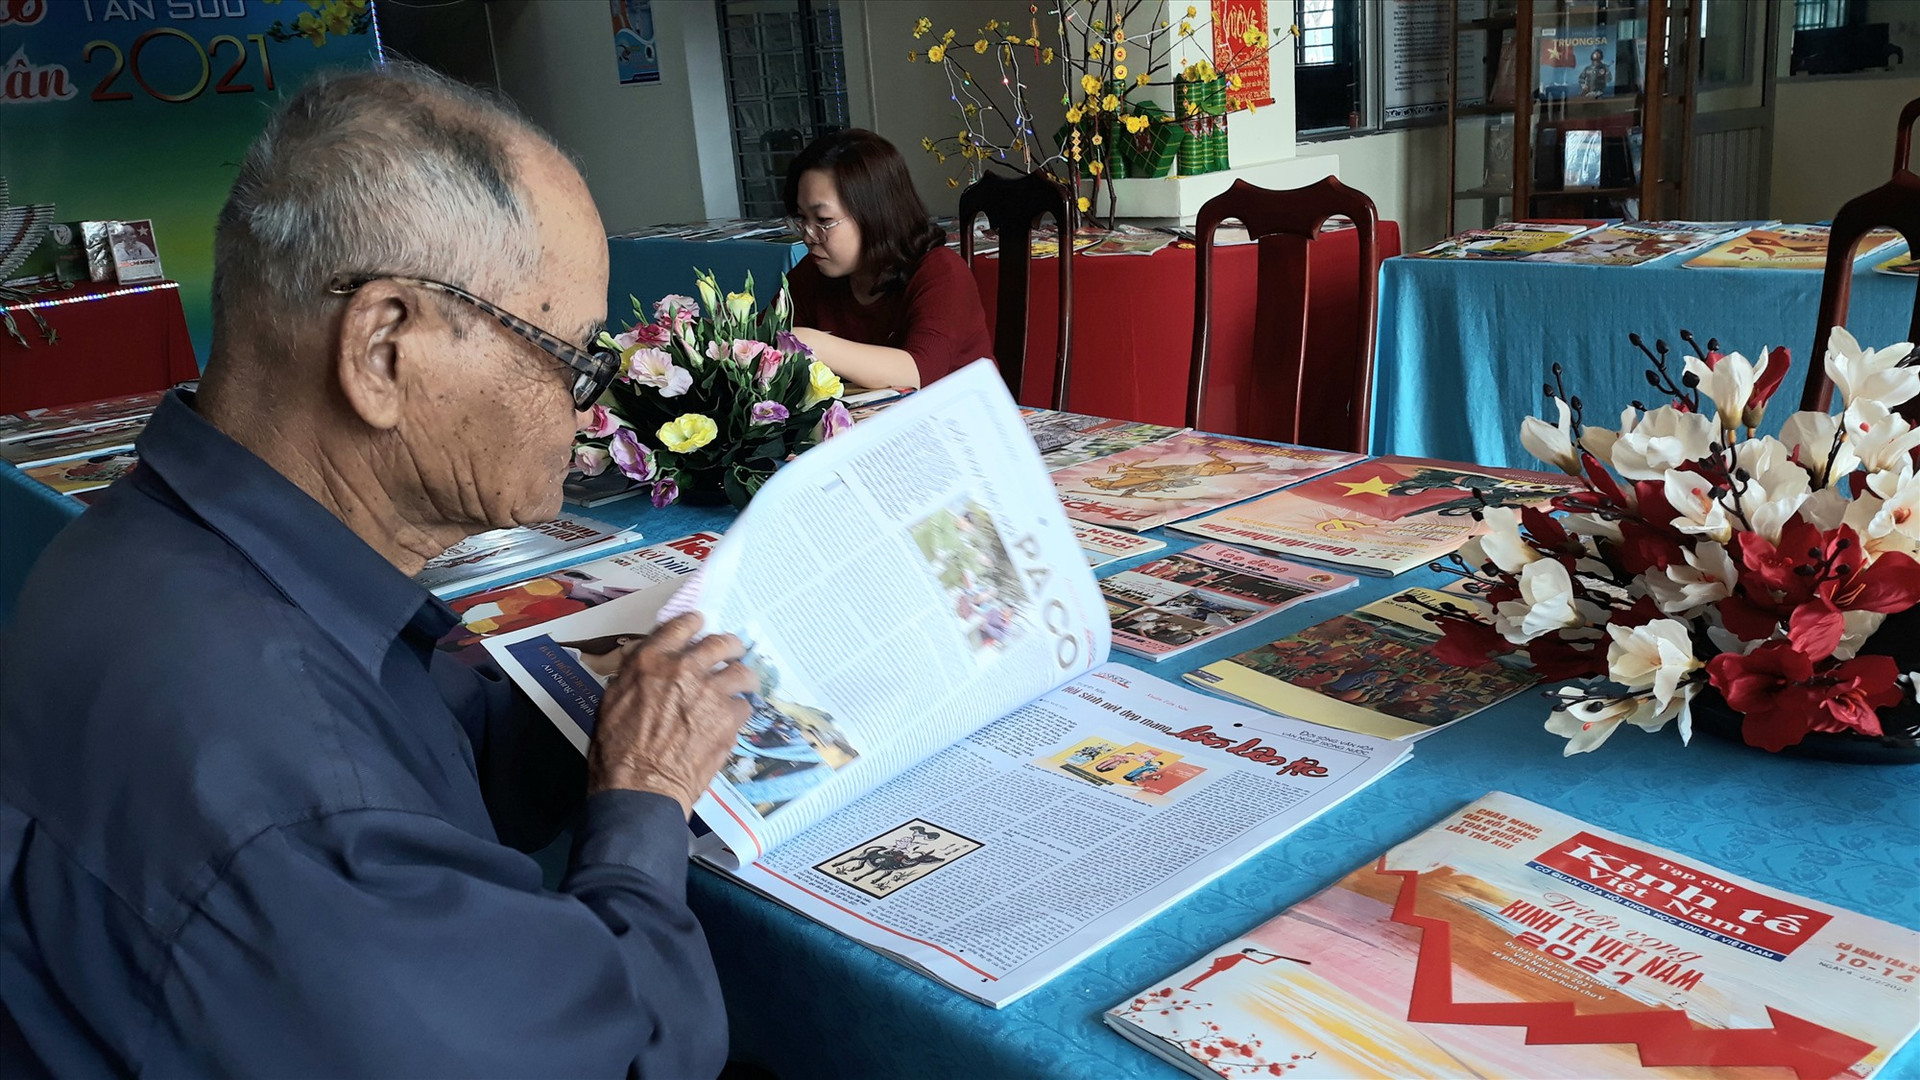 Đọc báo ngày tết tại Thư viện Quảng Nam. Ảnh: C.N